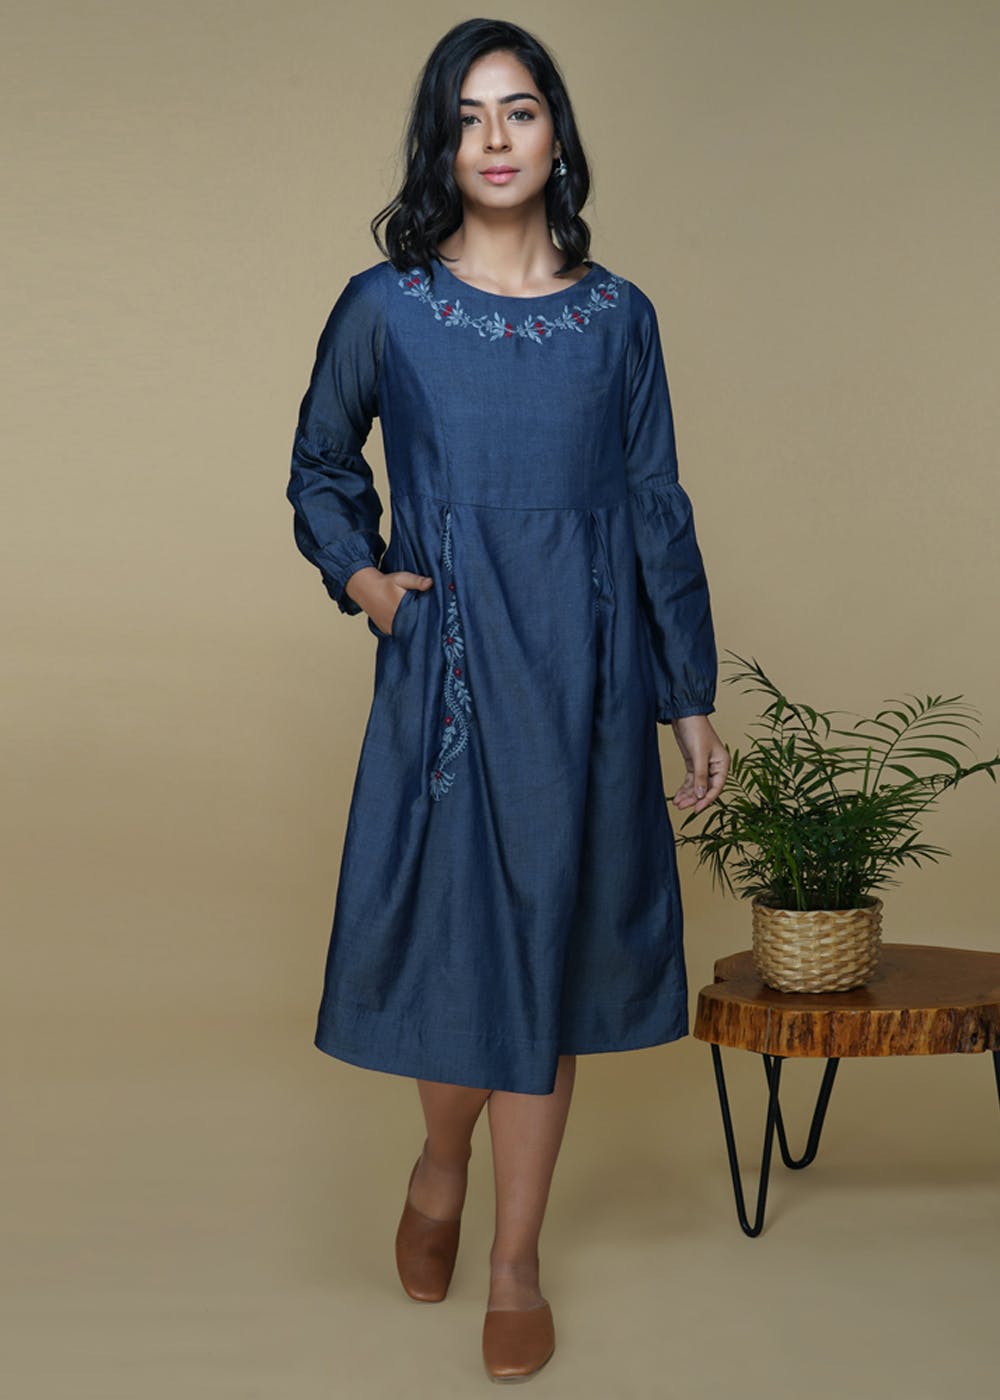 Get Cuffed Sleeve Detail Chikankari Denim Pleated Dress at ₹ 3465 | LBB ...